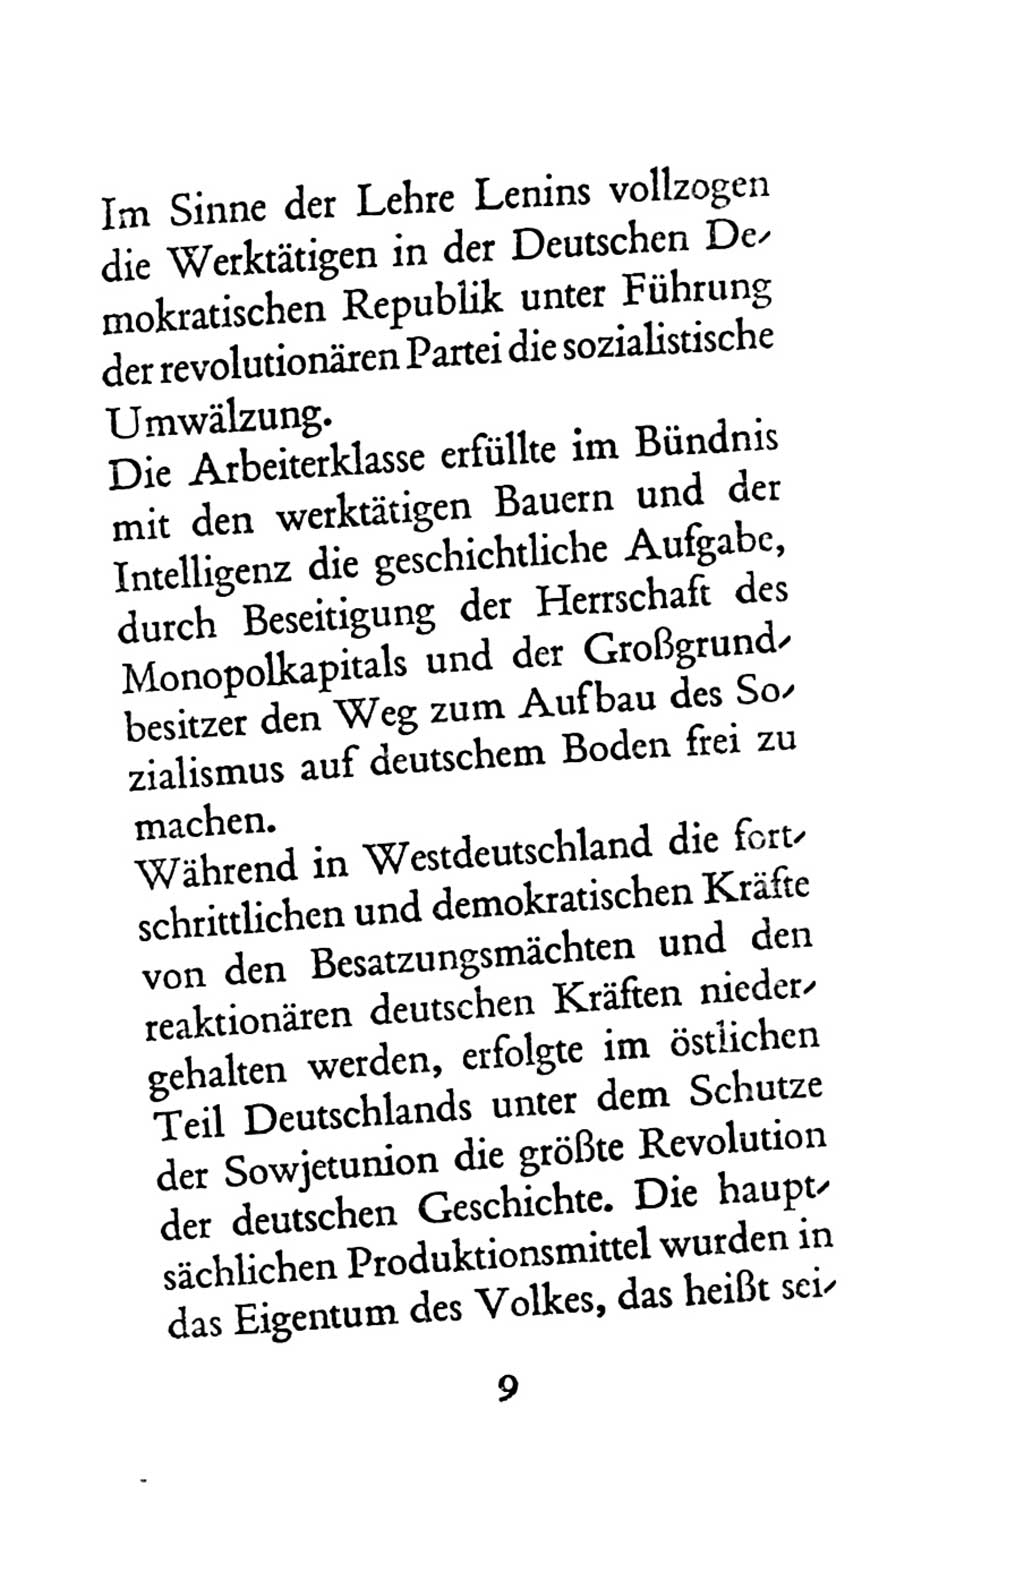 Statut der Sozialistischen Einheitspartei Deutschlands (SED) 1963, Seite 9 (St. SED DDR 1963, S. 9)